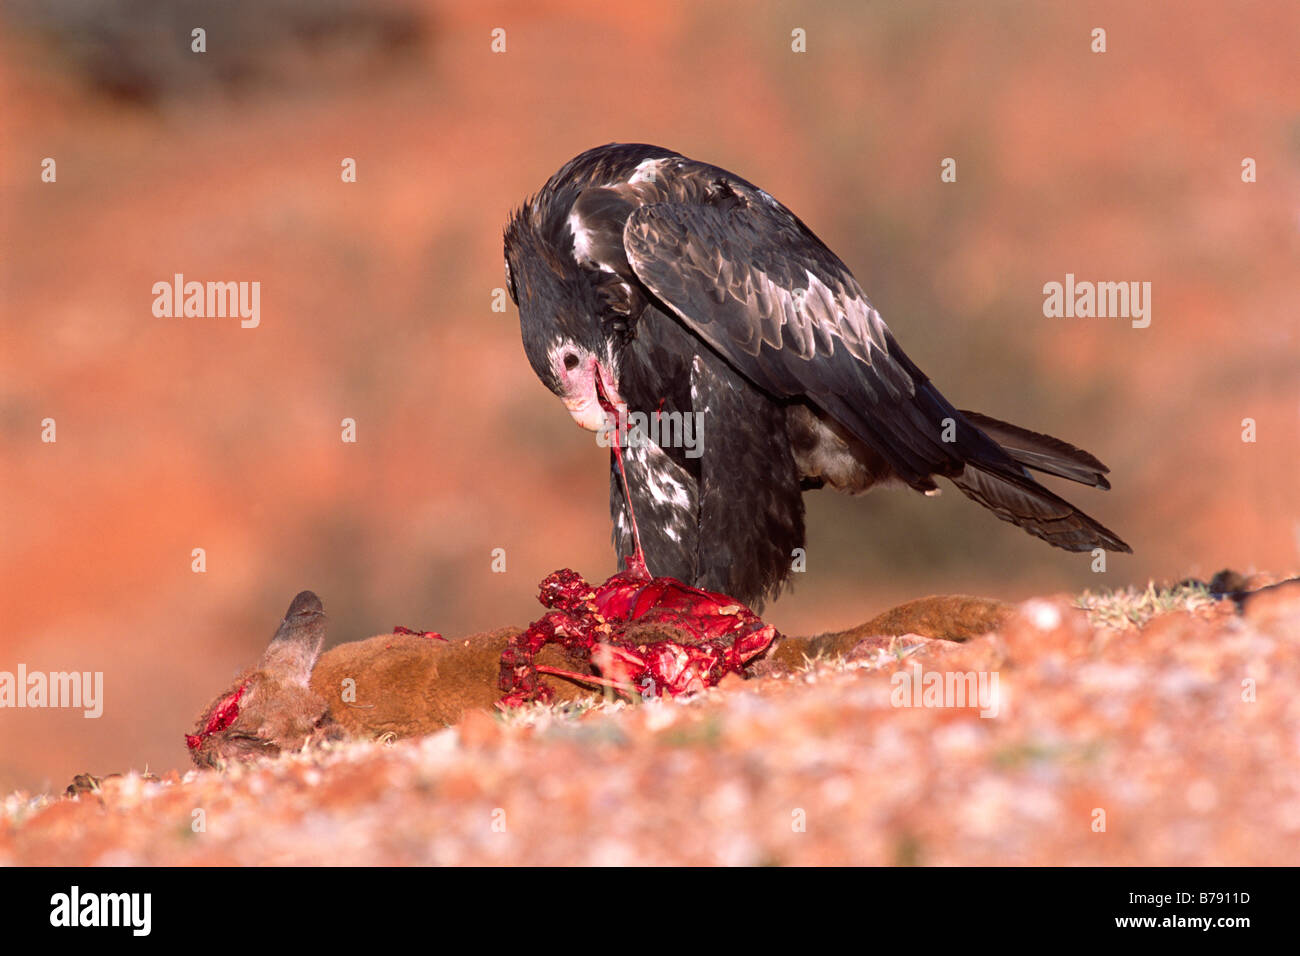 Aigle australien, eaglehawk (Aquila audax) sur ses proies, le sud de l'Australie, l'Australie Banque D'Images